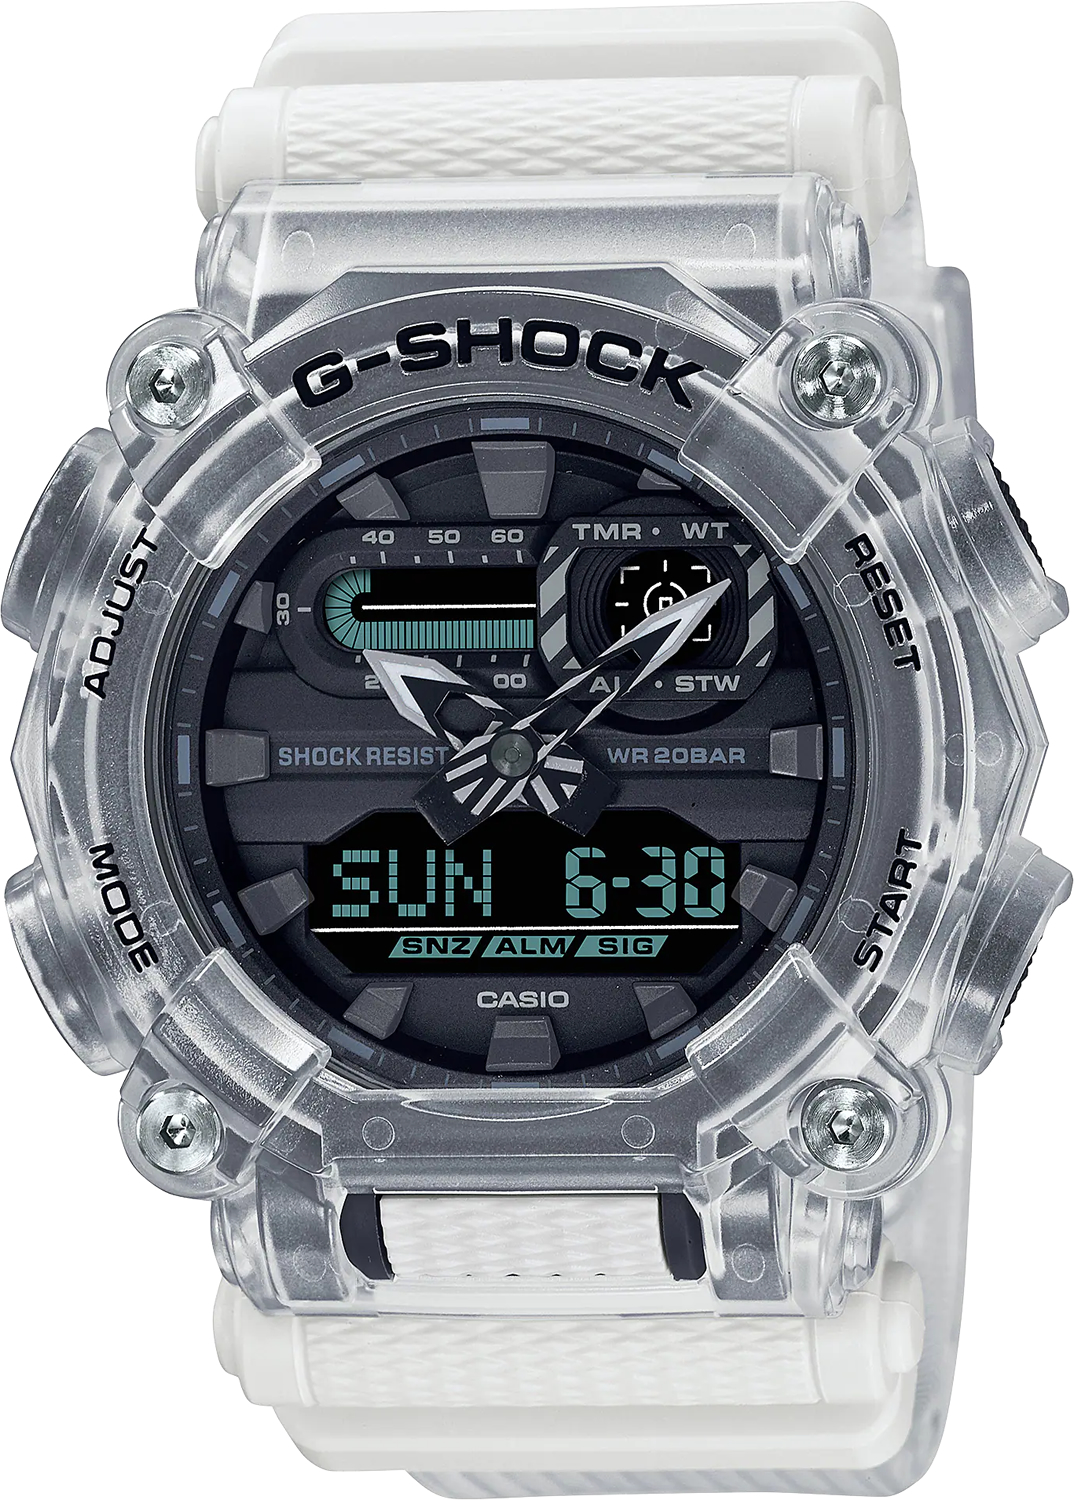 Наручные часы Casio GA-900SKL-7A наручные часы casio ga 900skl 7a